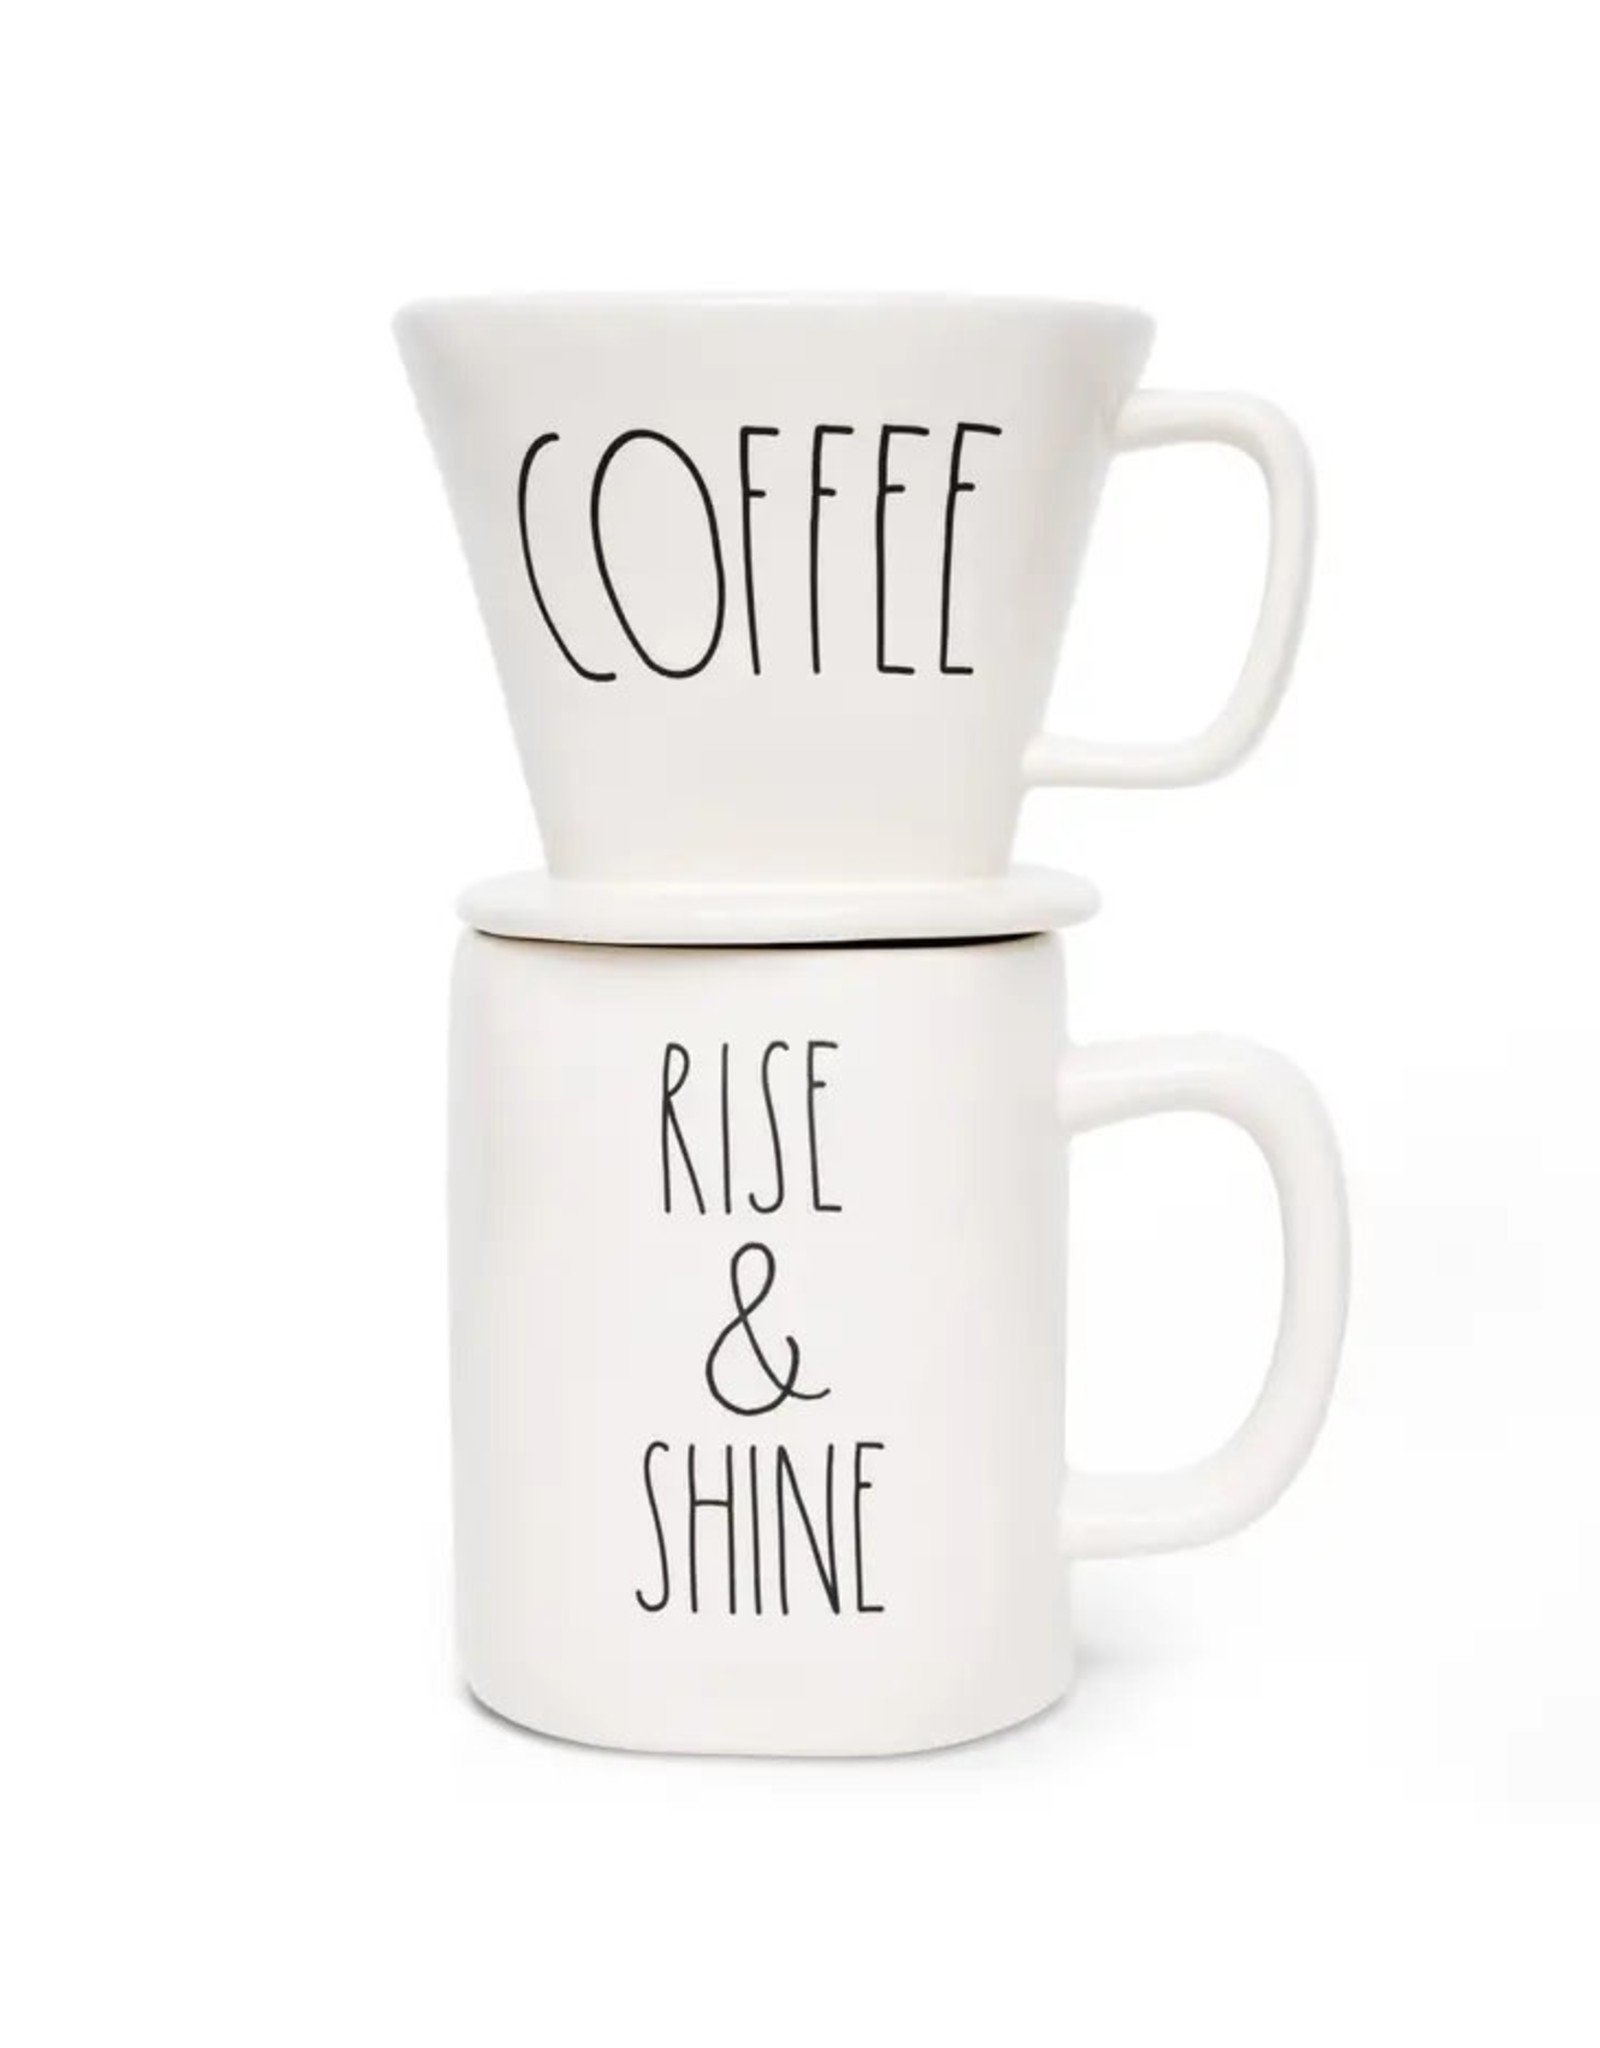 Rae Dunn Artisan COFFEE Drip and RISE & SHINE Mug Set - Phillips